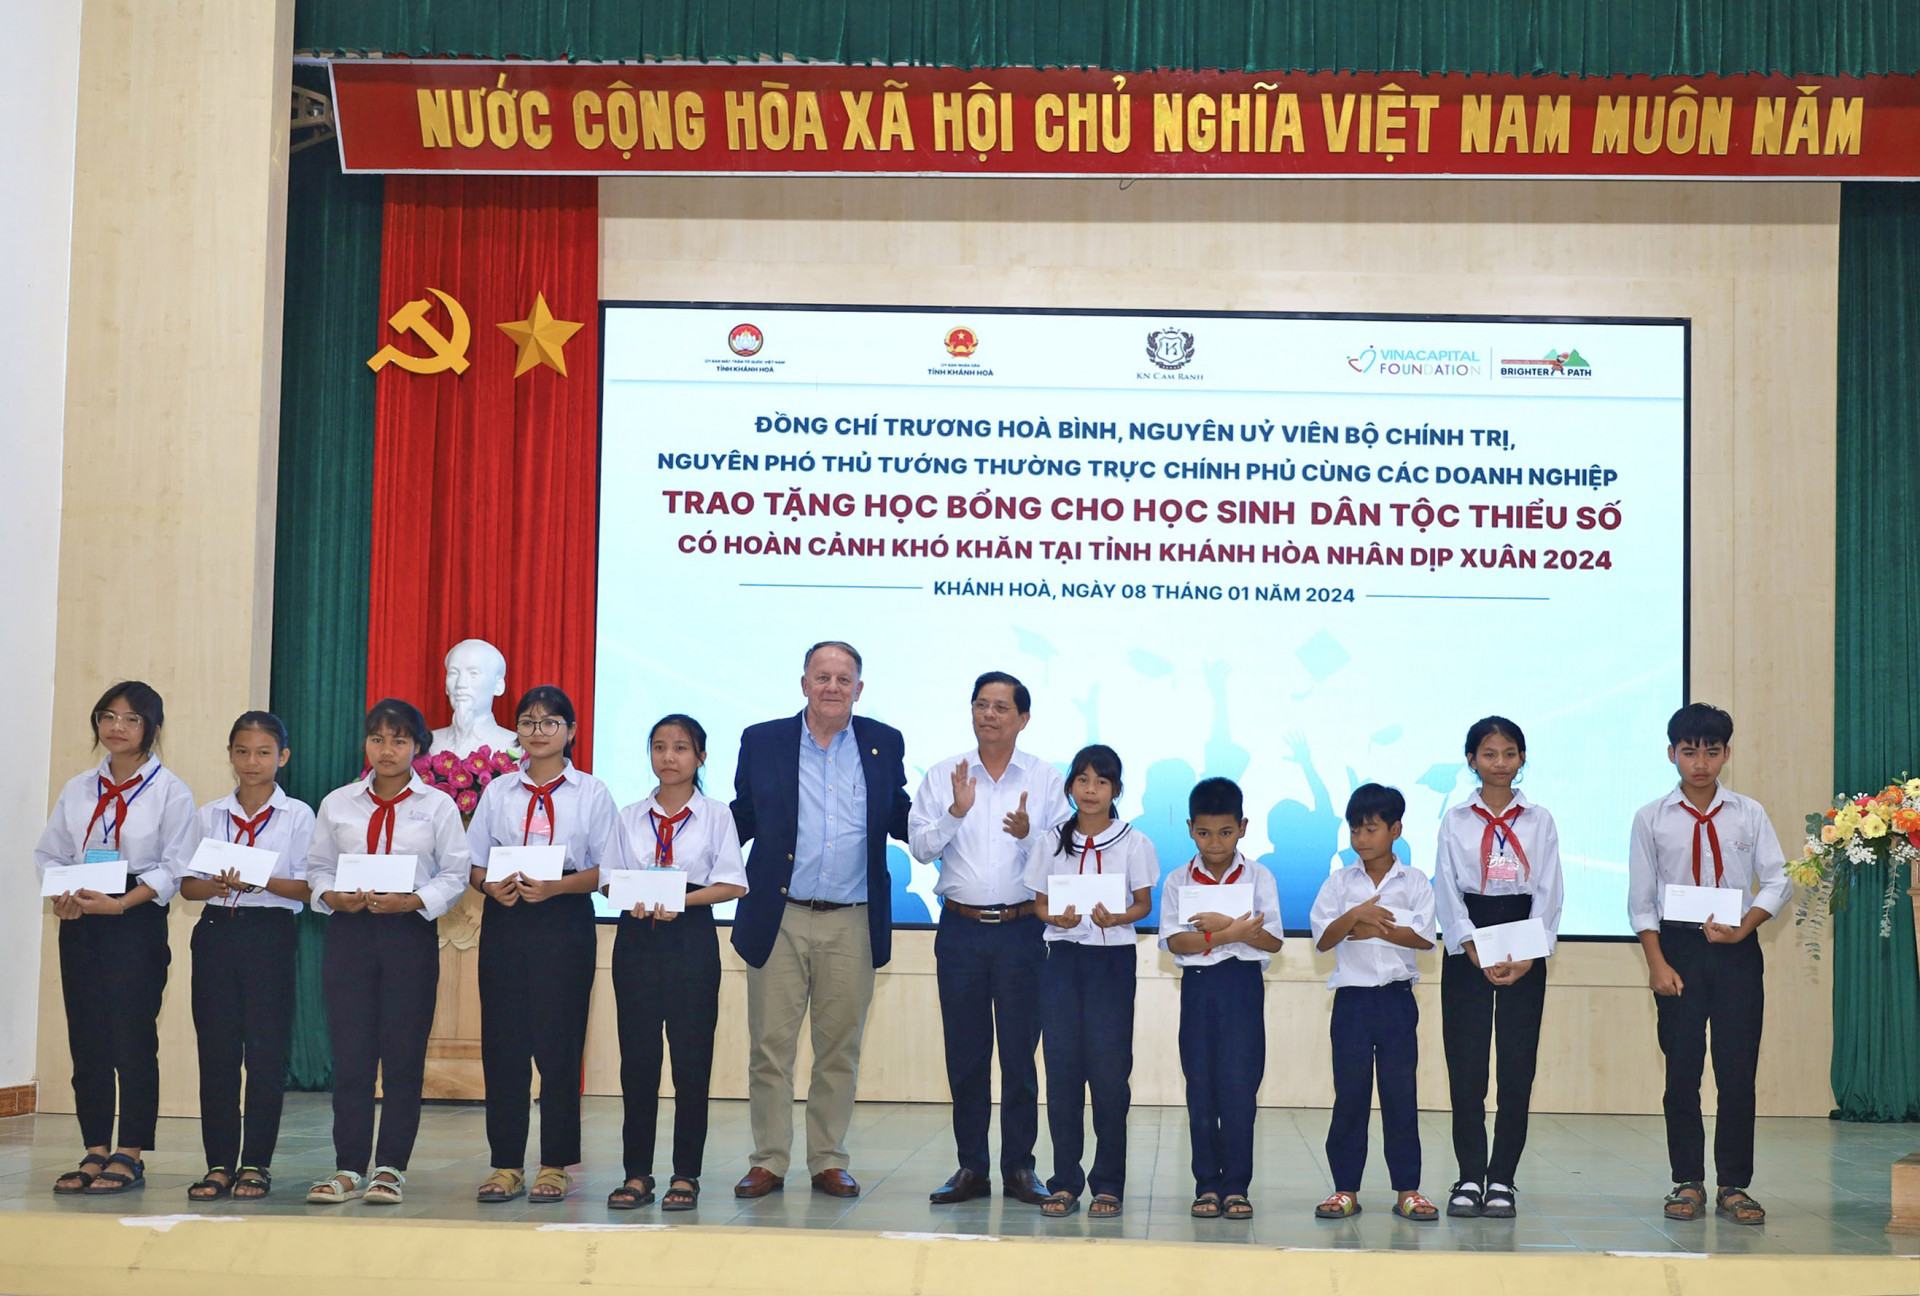 Đồng chí Nguyễn Tấn Tuân (thứ 6 từ phải sang) và đơn vị tài trợ trao học bổng cho học sinh.